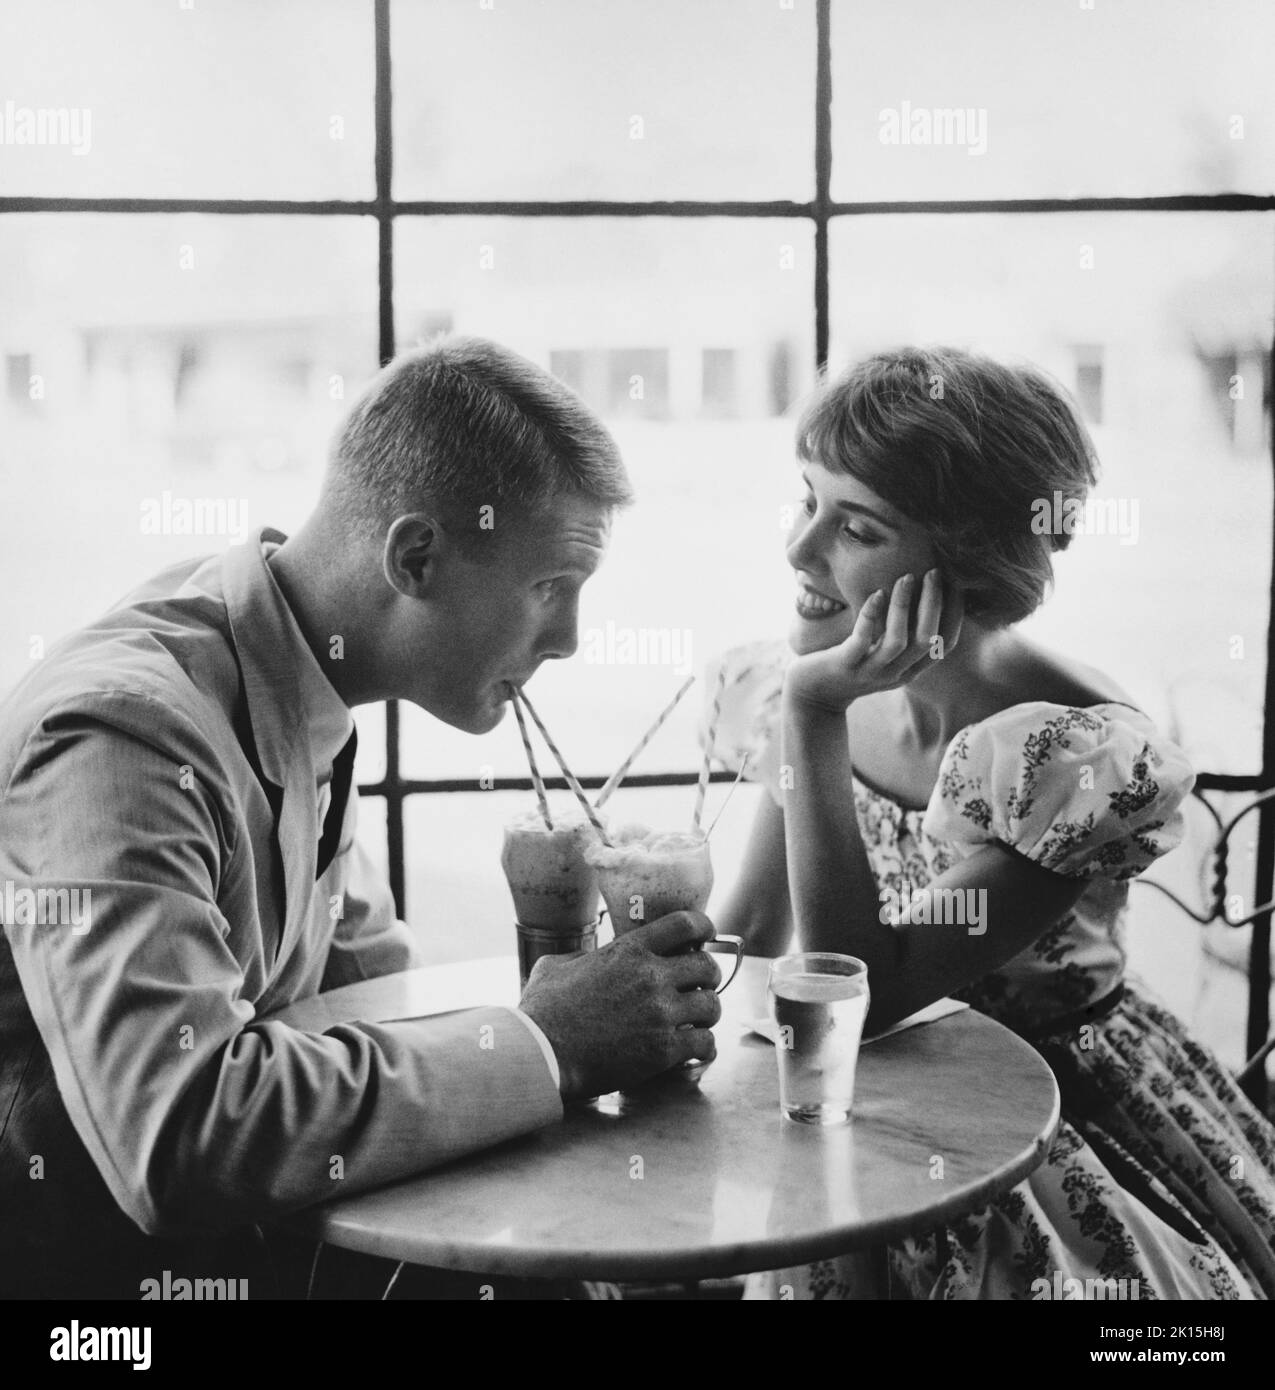 Ein Paar trinkt Limonaden, 1950s. Stockfoto